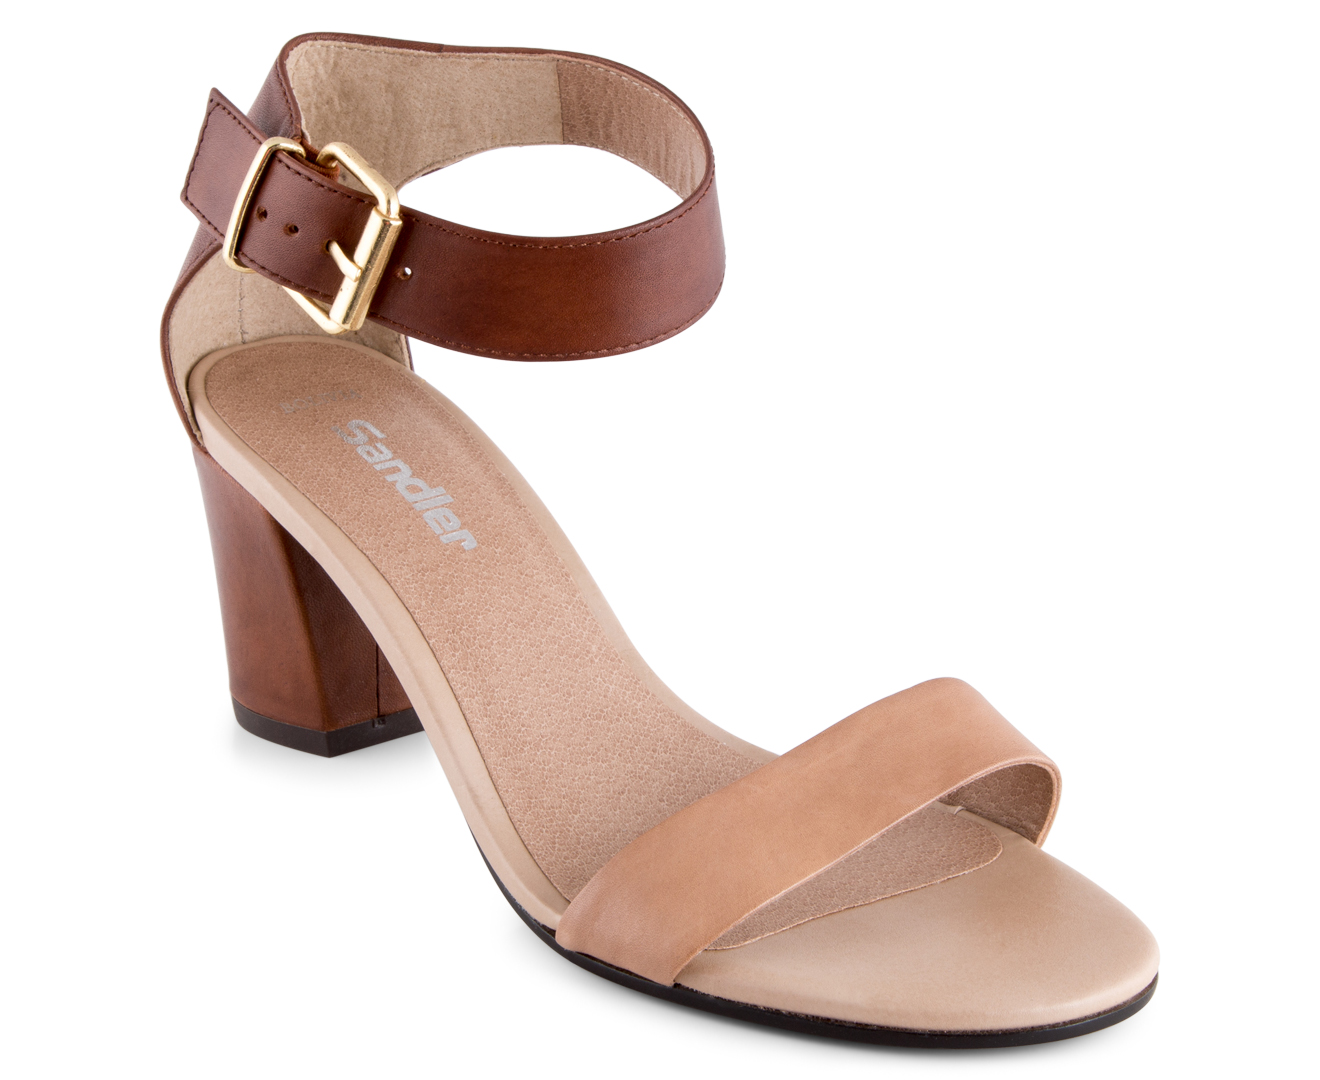 Sandler Women's Bolivia Sandals - Cognac/Camel Glove | Catch.com.au